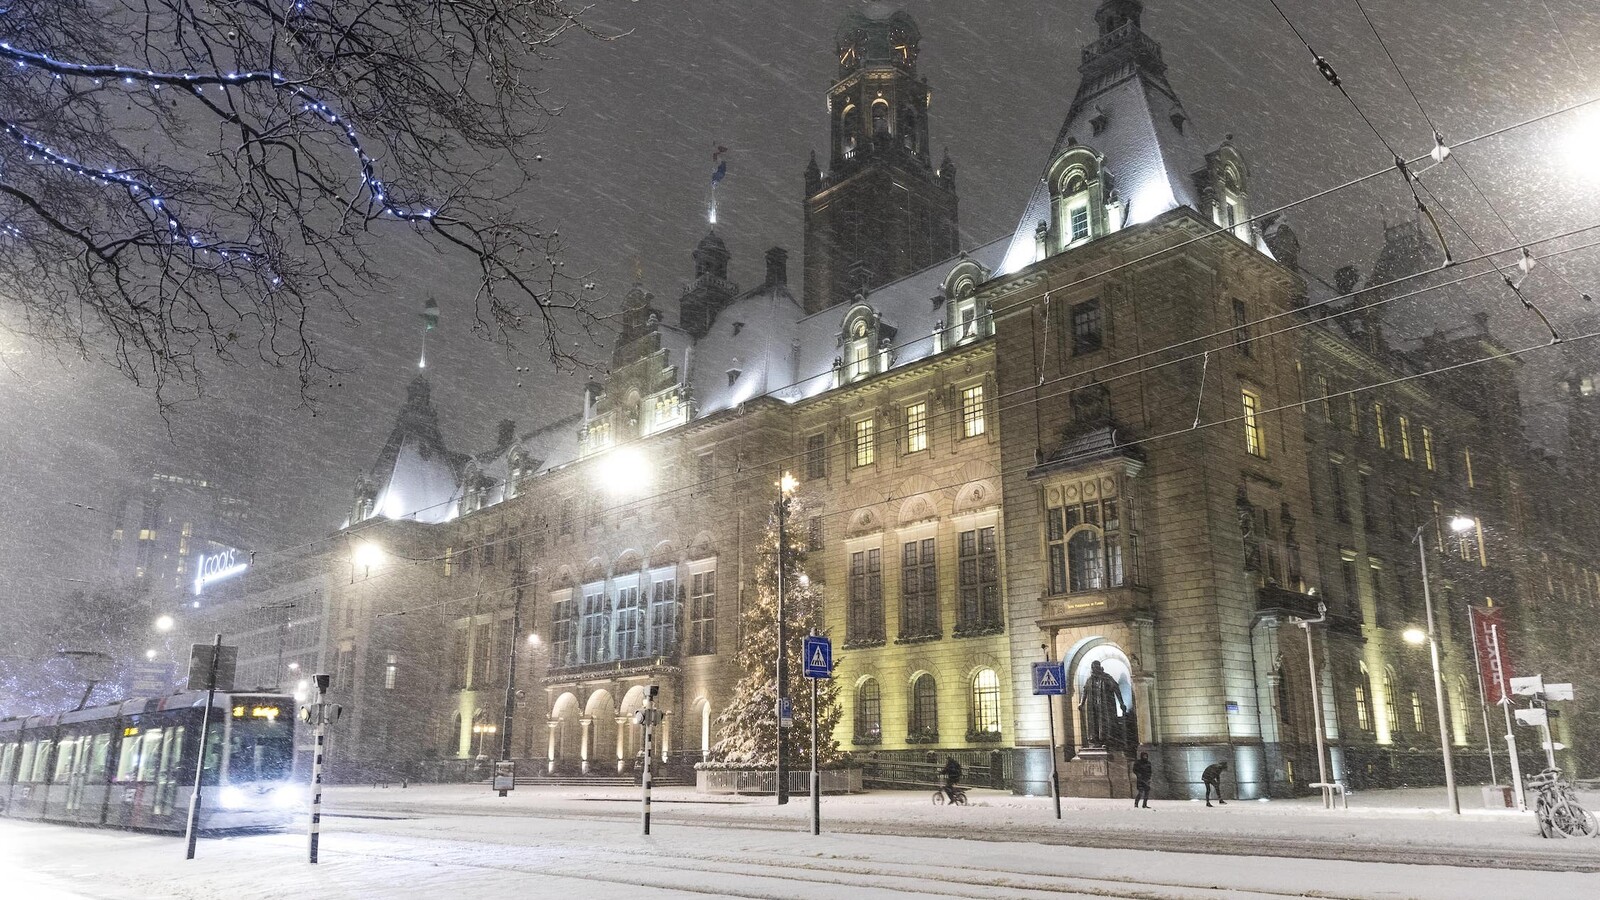 Stadhuis Rotterdam sneeuw kerst Guido Pijper